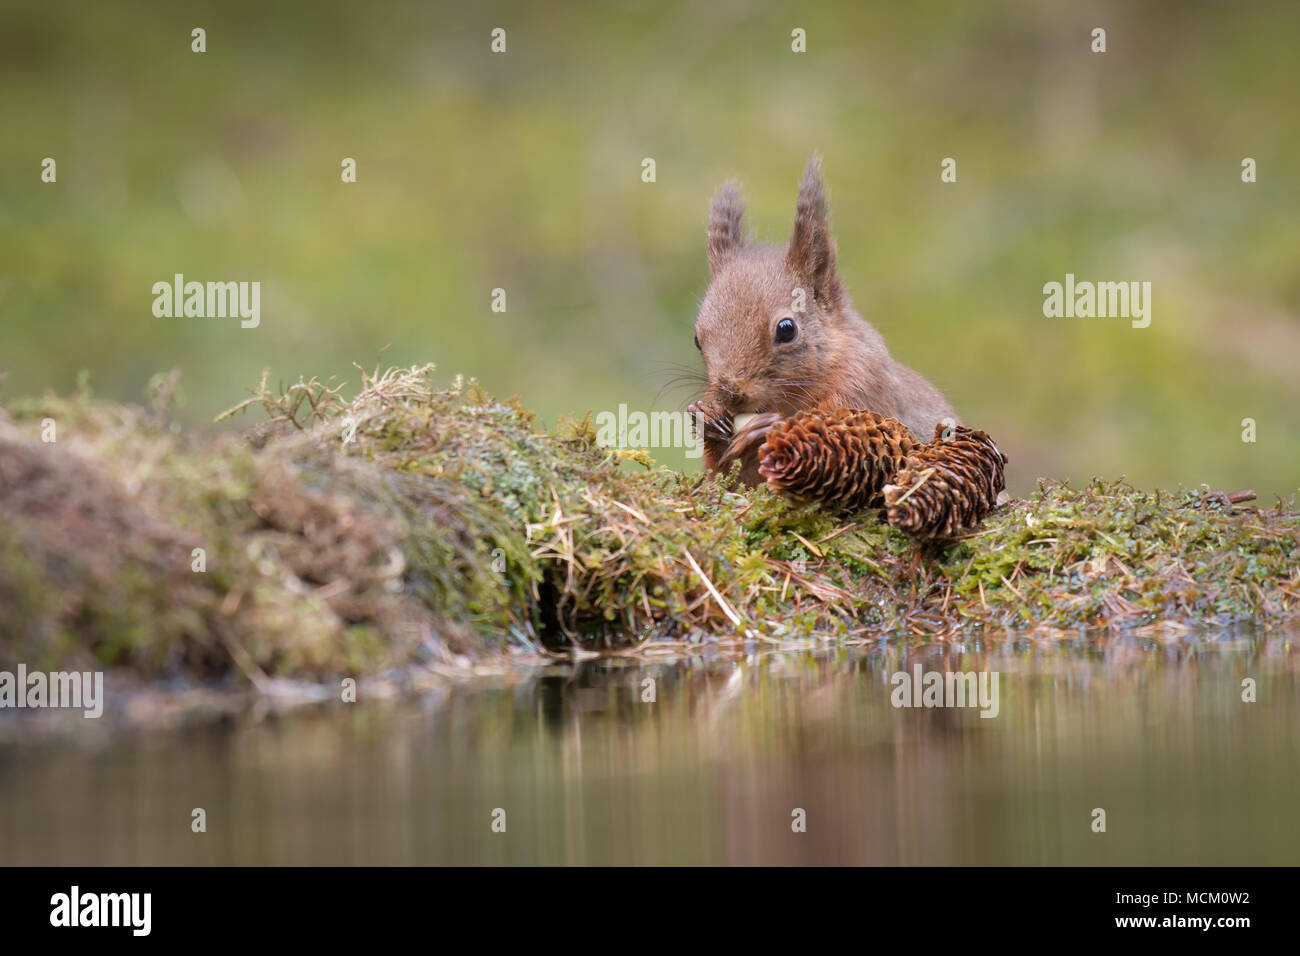 Une vue en gros plan d'un écureuil rouge manger une noix au bord d'une petite piscine Banque D'Images